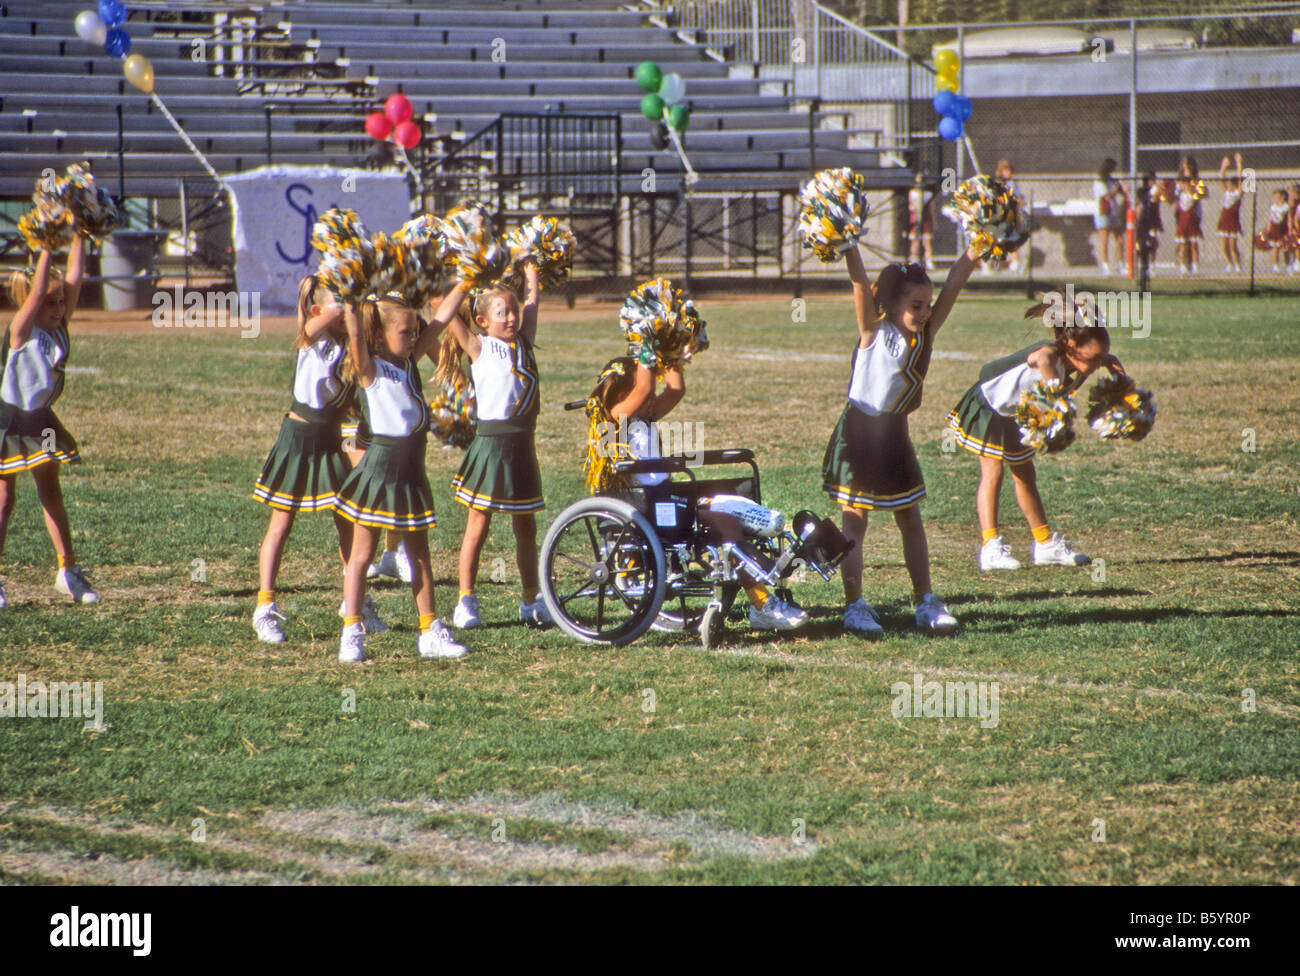 Kader von kleinen Mädchen, eine im Rollstuhl, jubelt während des Wettkampfes bei Fußballspiel, USA Stockfoto